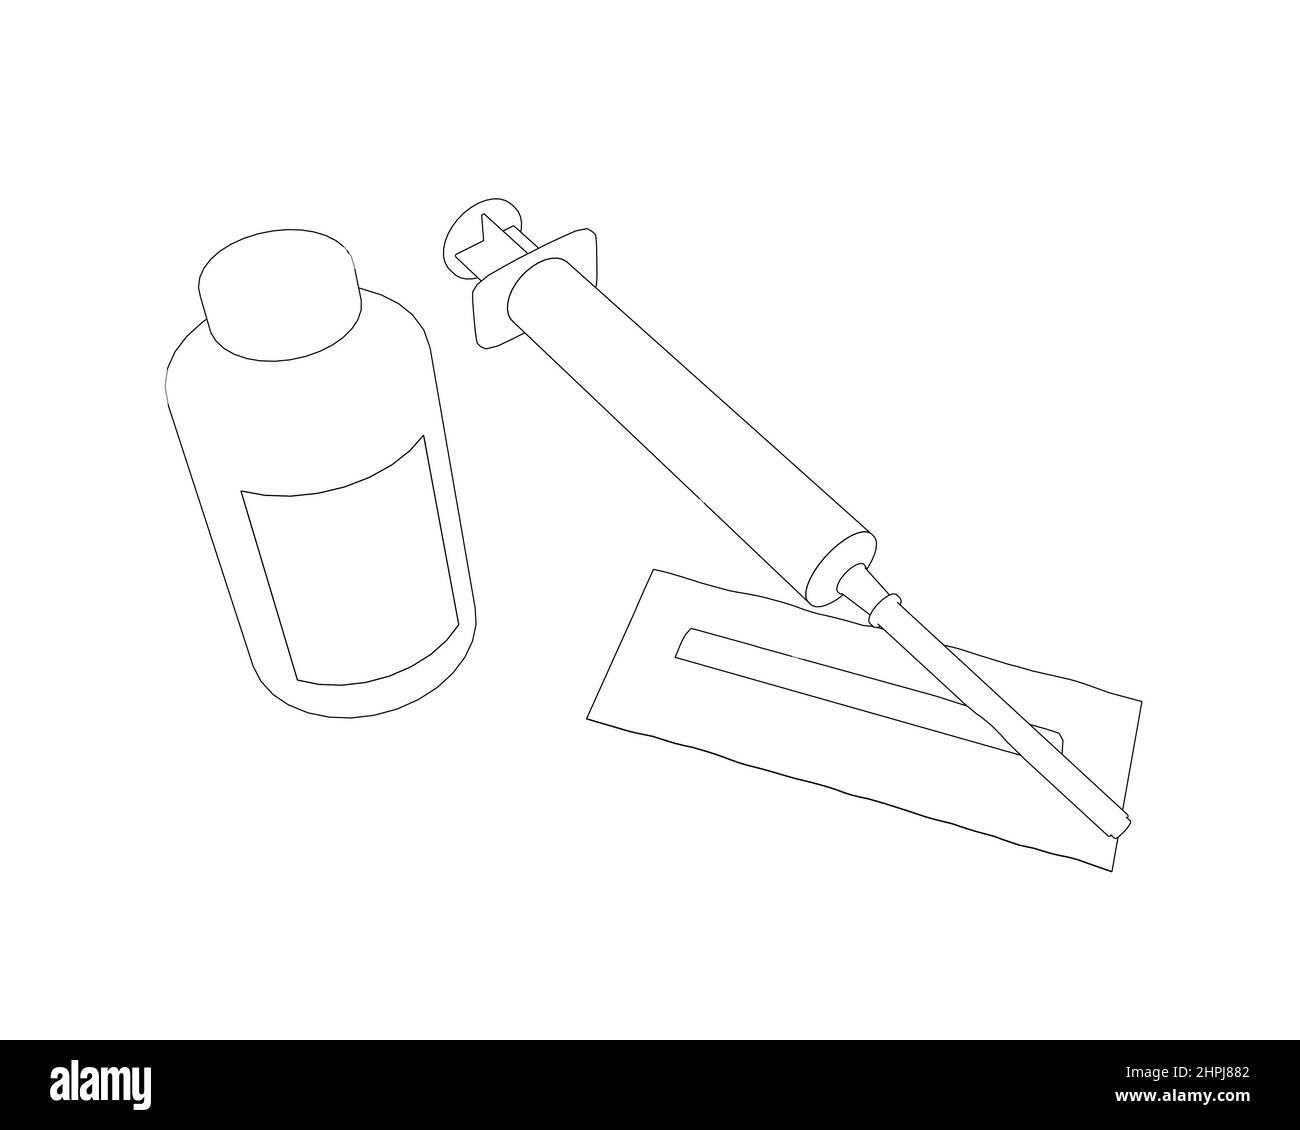 Die Kontur einer medizinischen Spritze mit einer Ampulle aus schwarzen, auf weißem Hintergrund isolierten Linien. Vektorgrafik. Stock Vektor